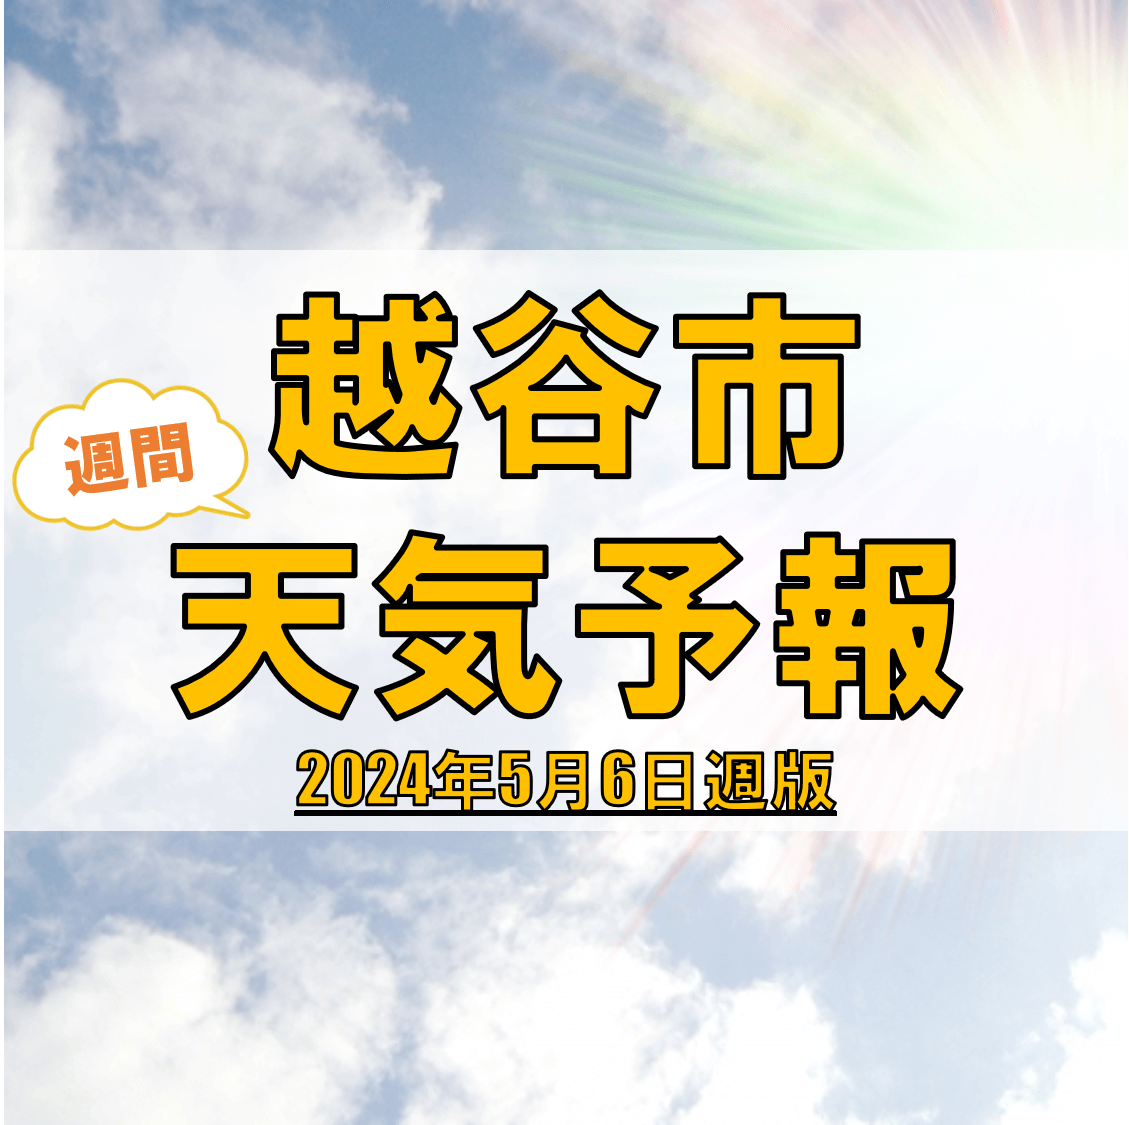 越谷市の天気 週間予報【2024年5月6日週】